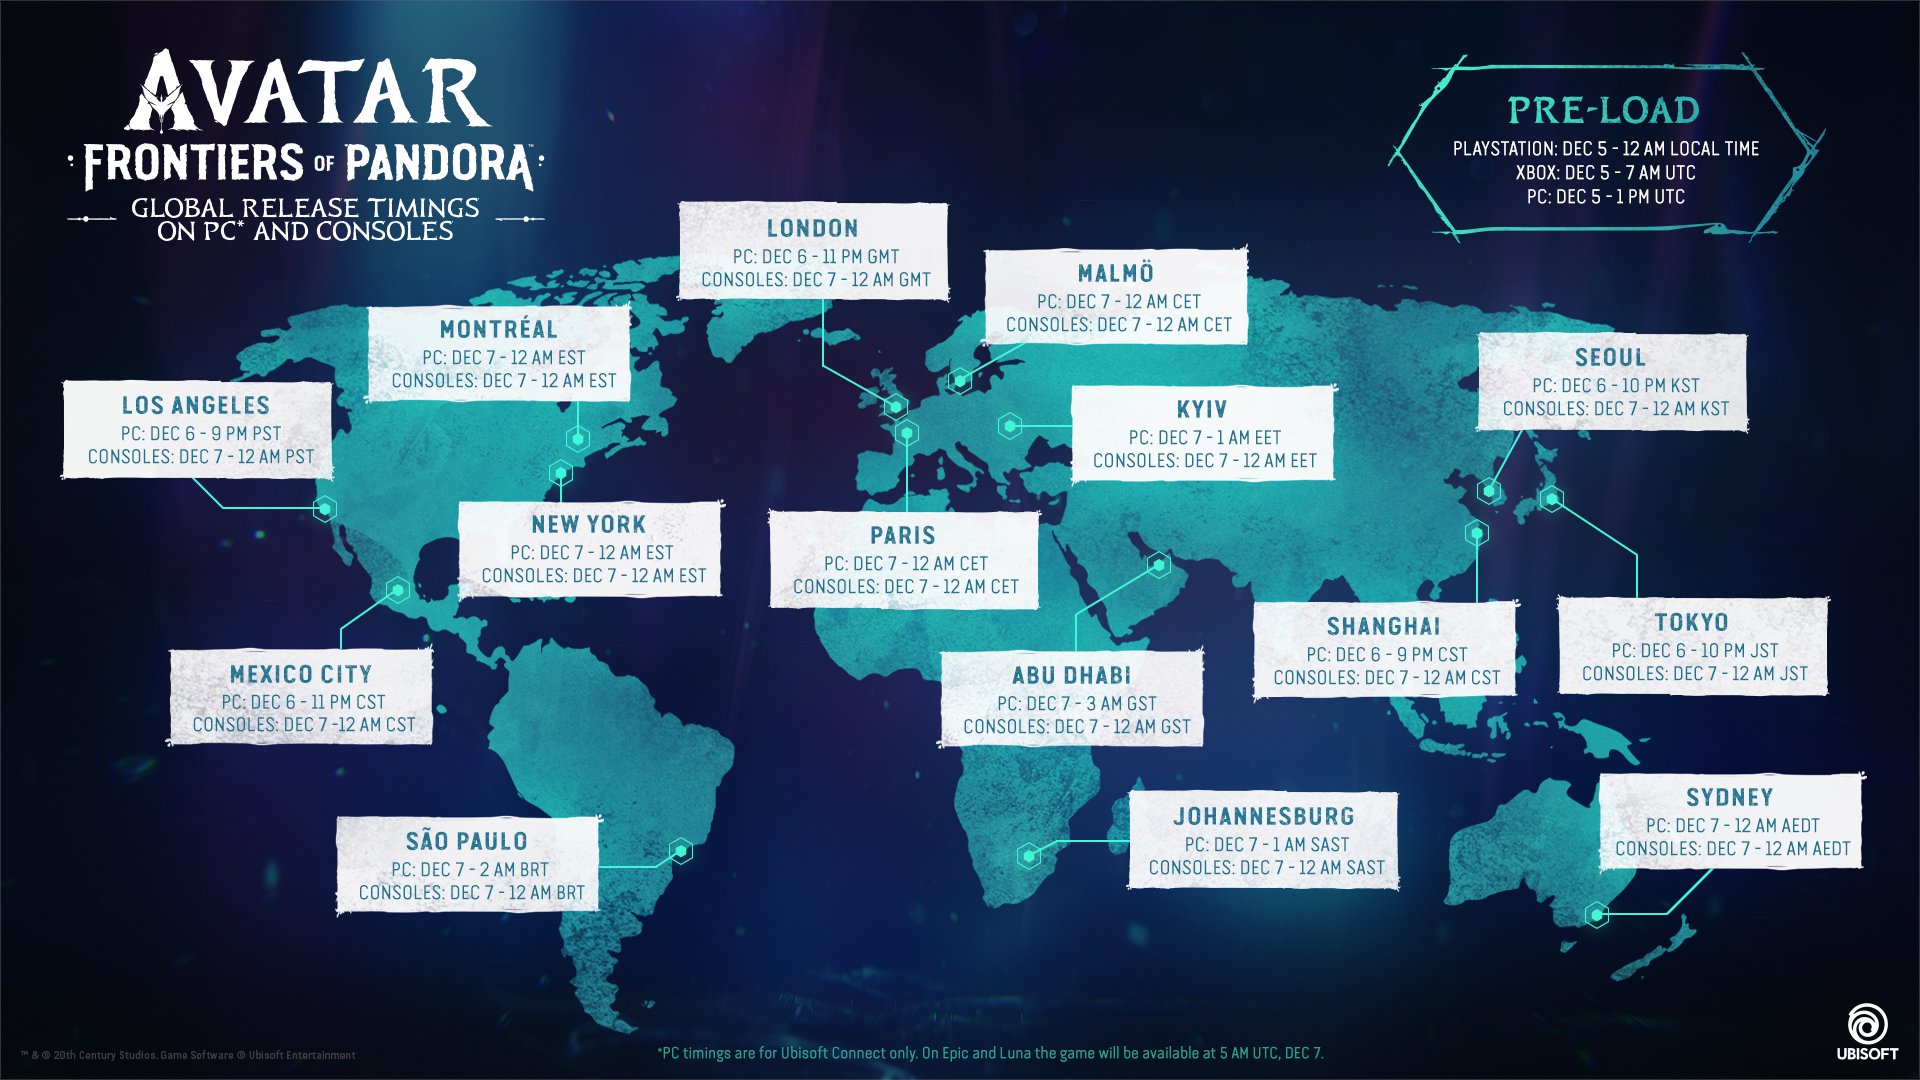 育碧宣佈《阿凡達:潘多拉邊境》全球解鎖時間